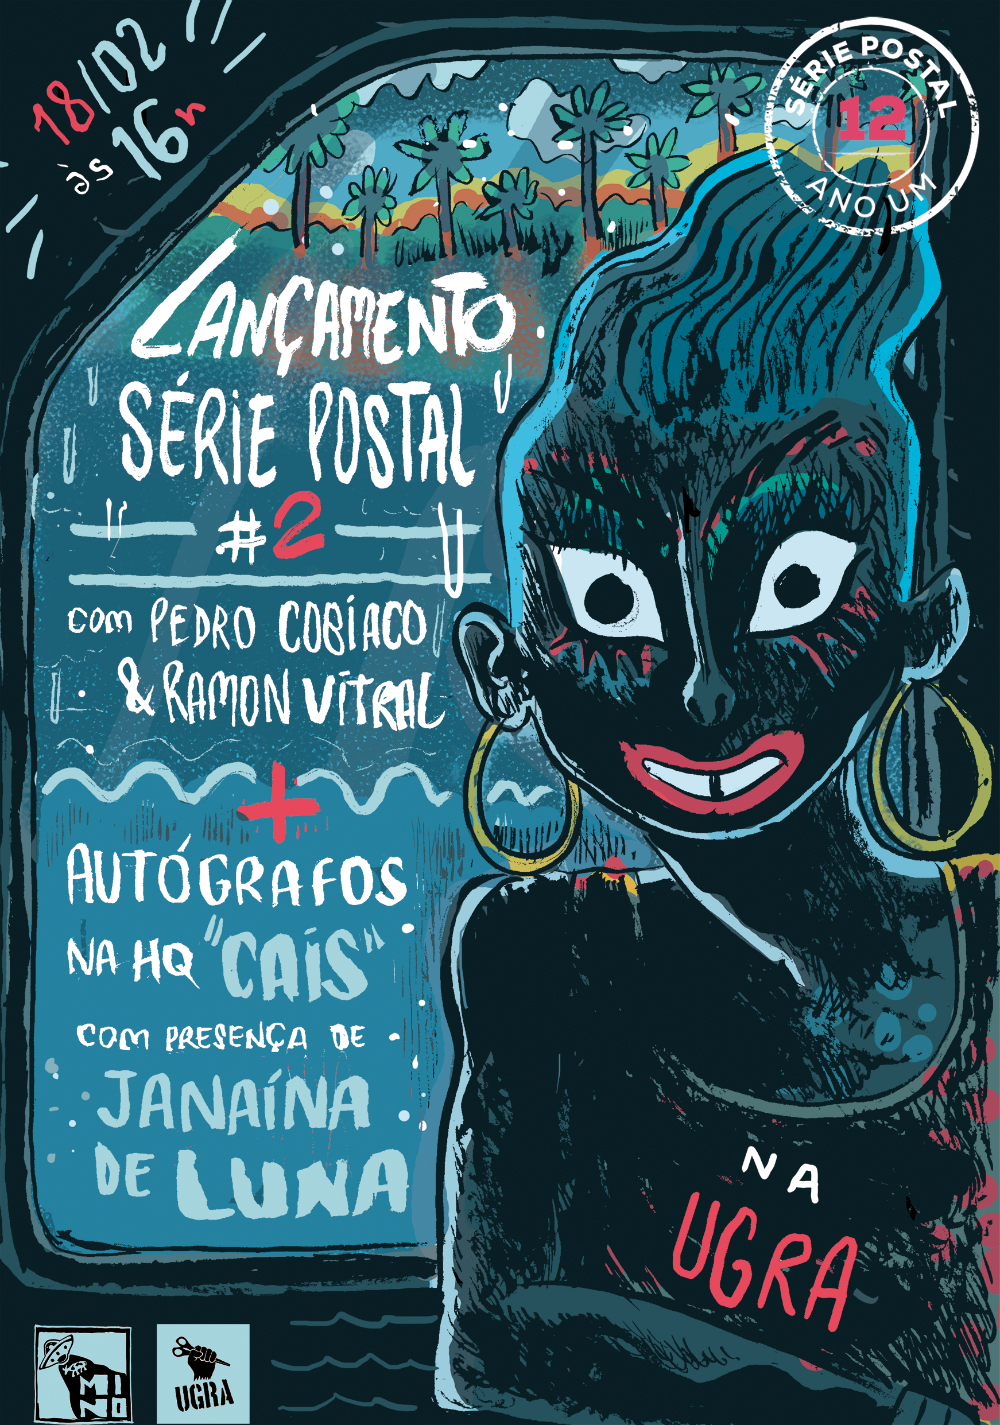 Série Postal: o cartaz produzido por Pedro Cobiaco para o lançamento do segundo número da coleção